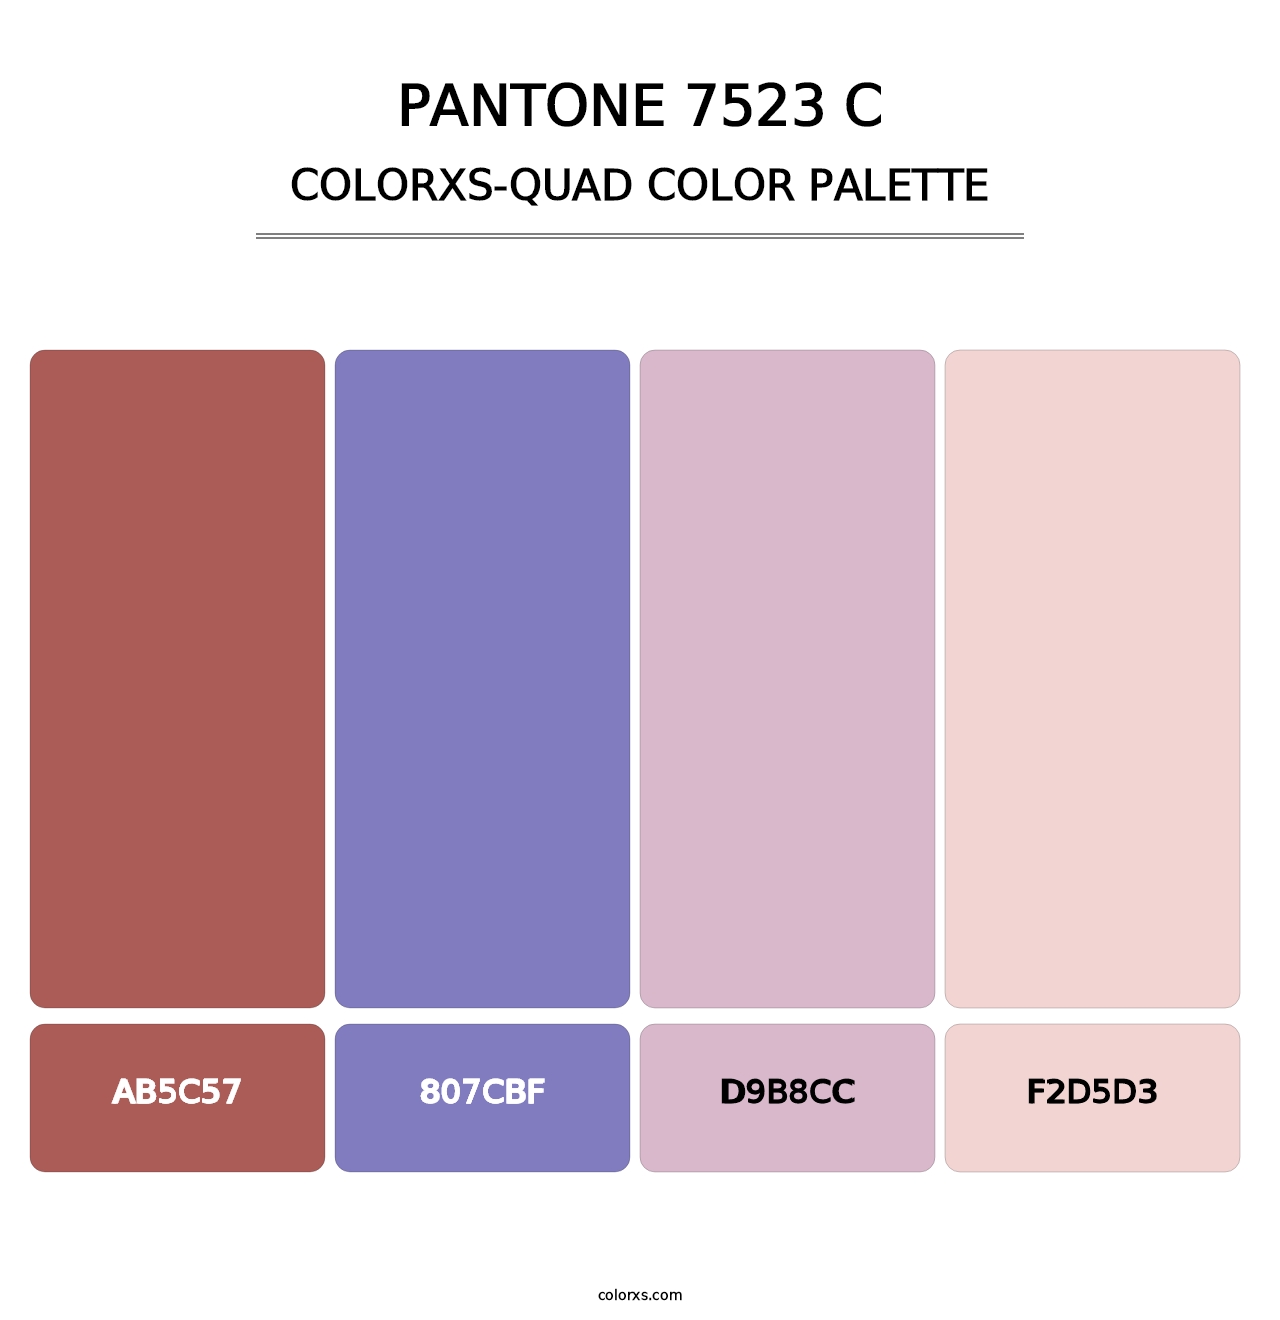 PANTONE 7523 C - Colorxs Quad Palette